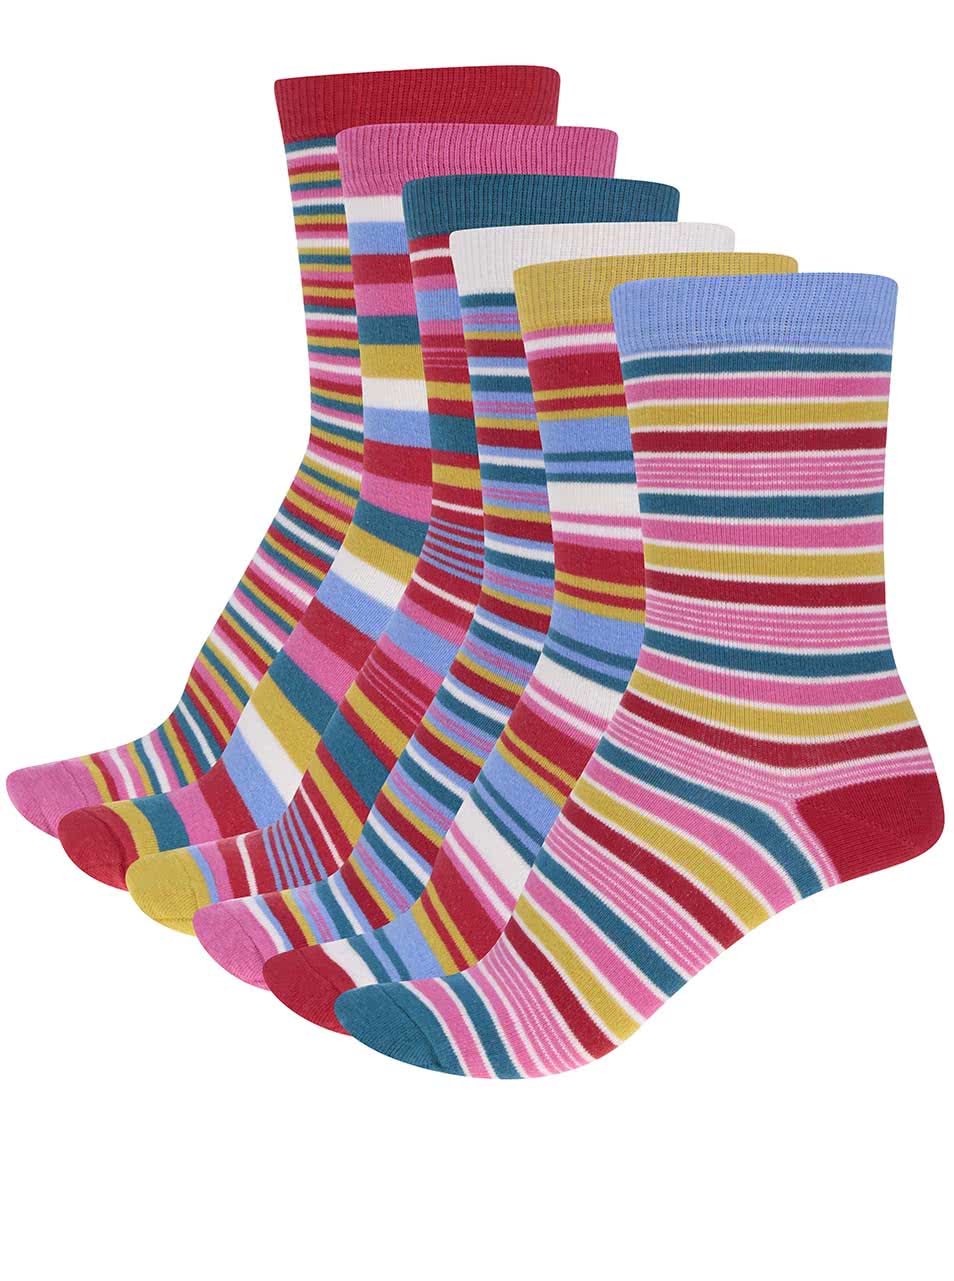 Sada šesti dámských pruhovaných ponožek Oddsocks Stripes